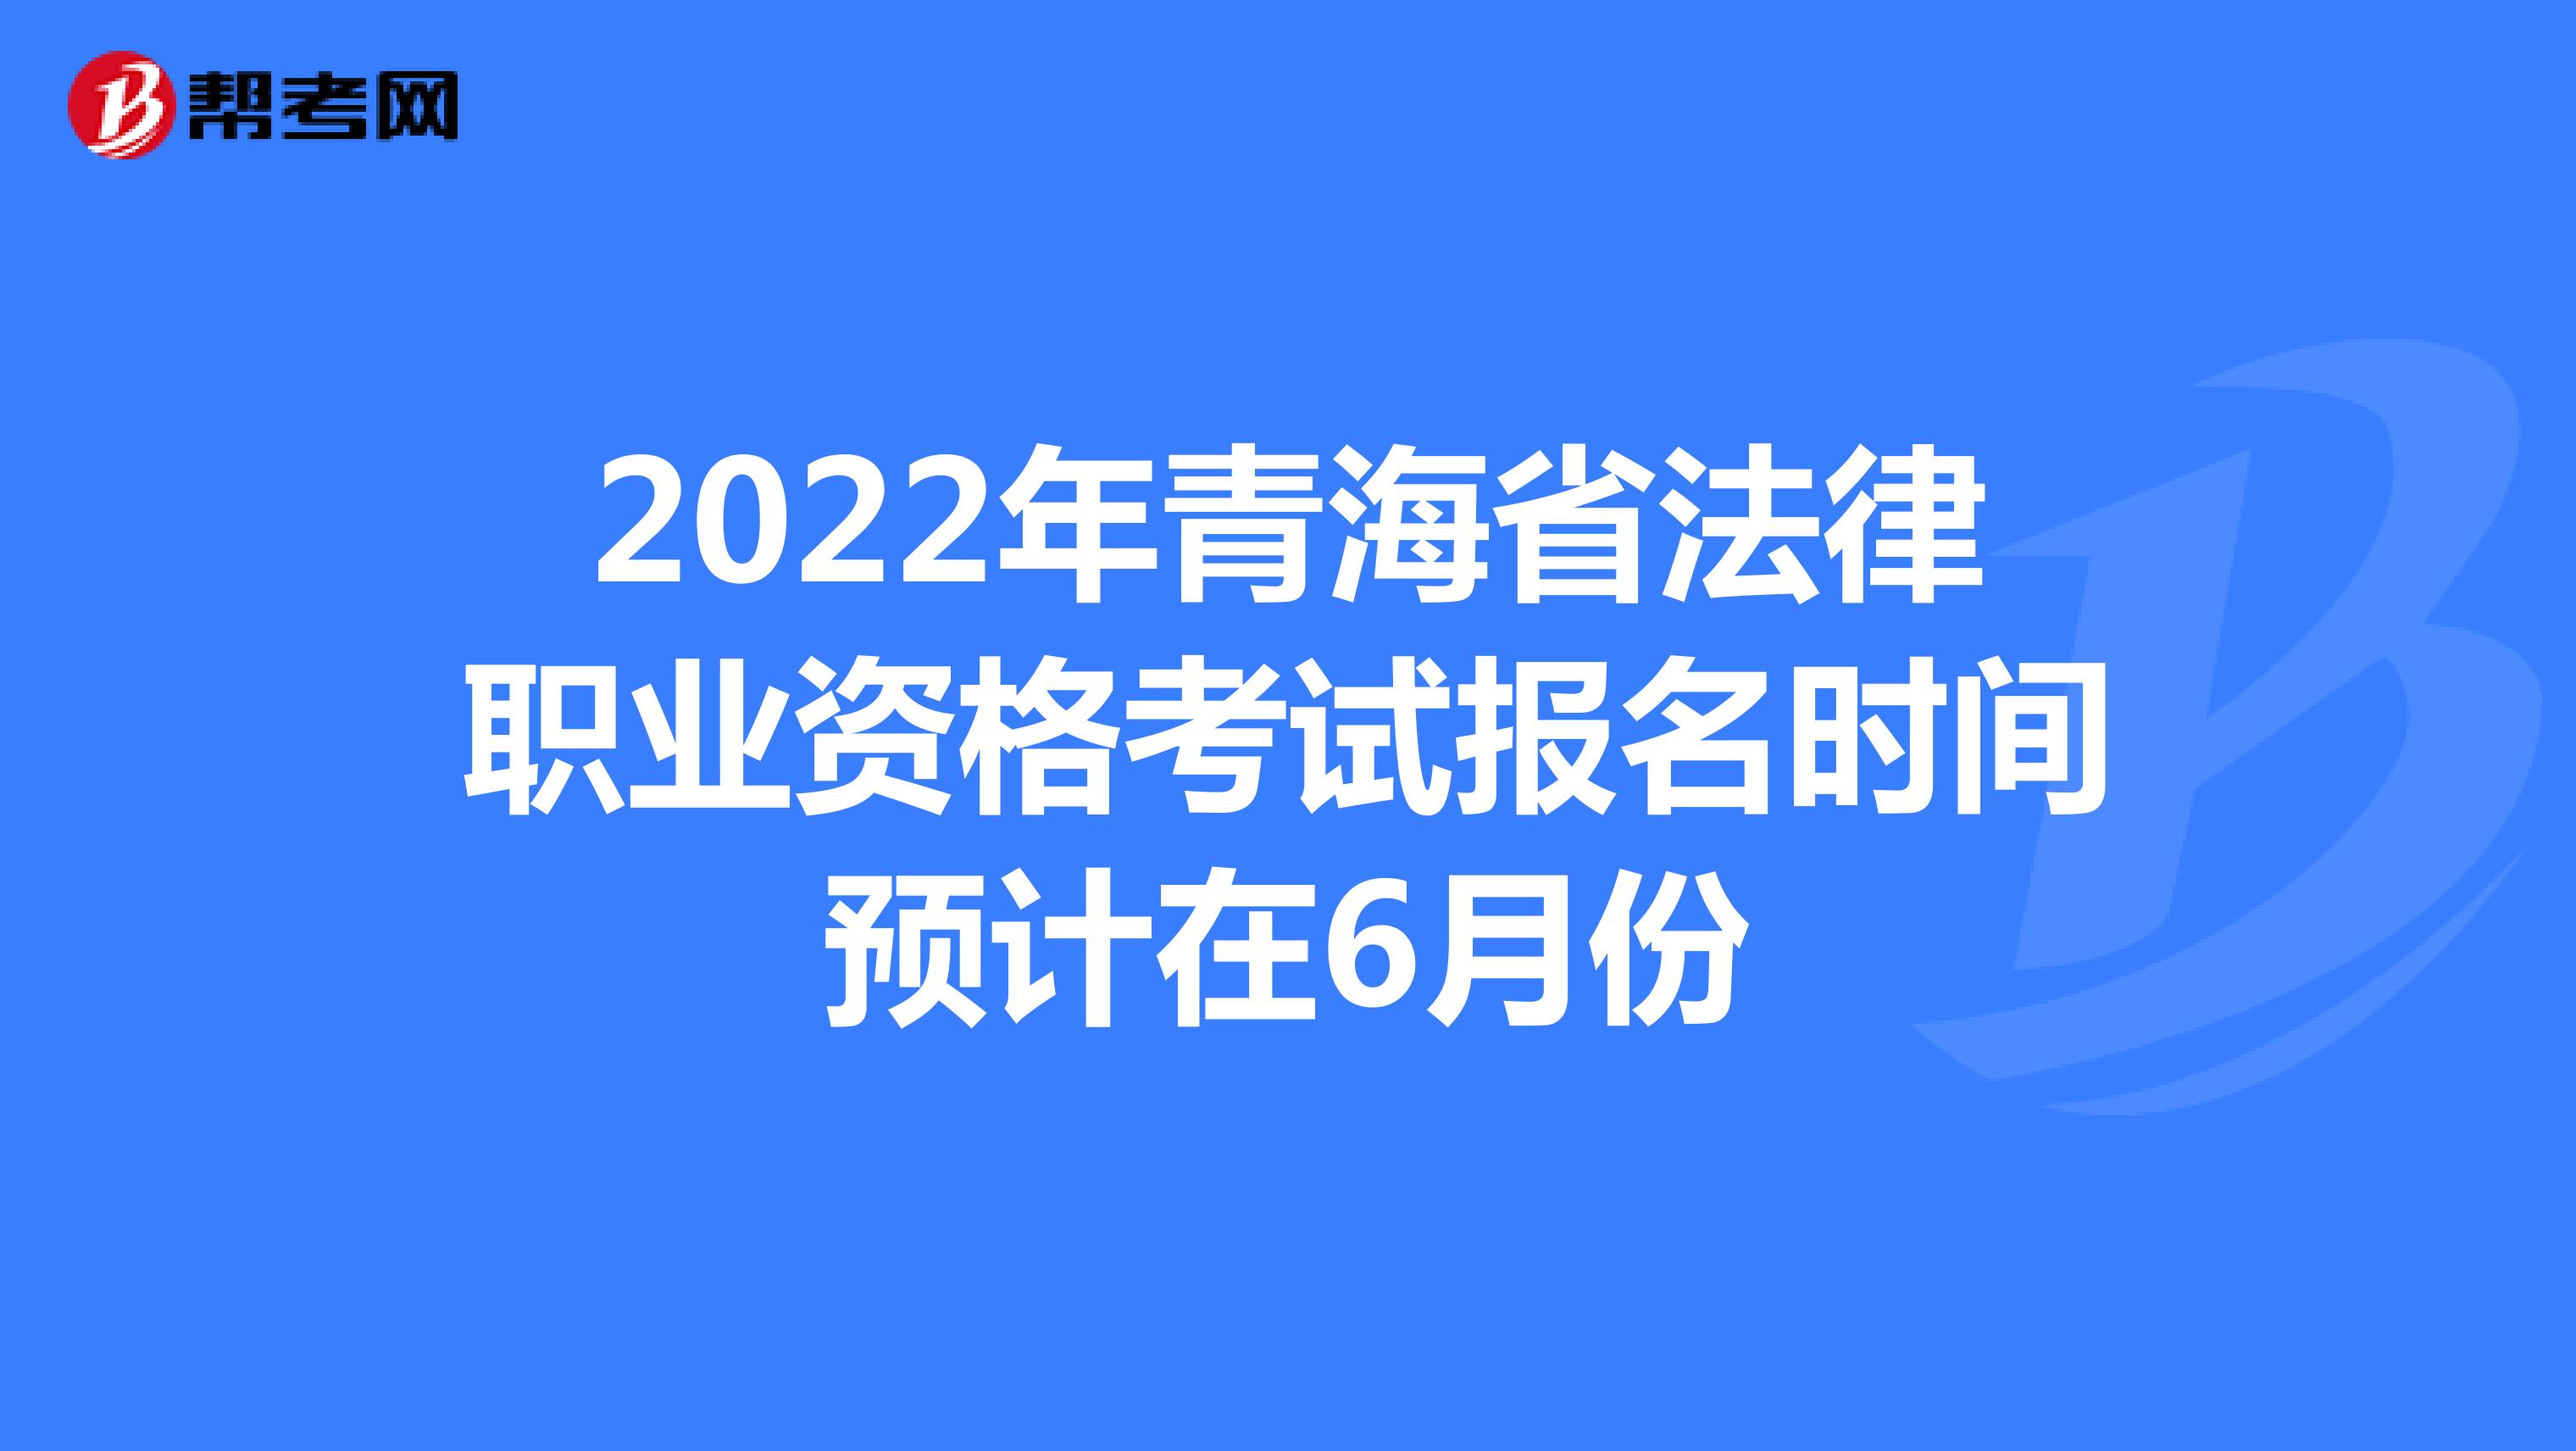 2022年青海省法律职业资格考试报名时间预计在6月份